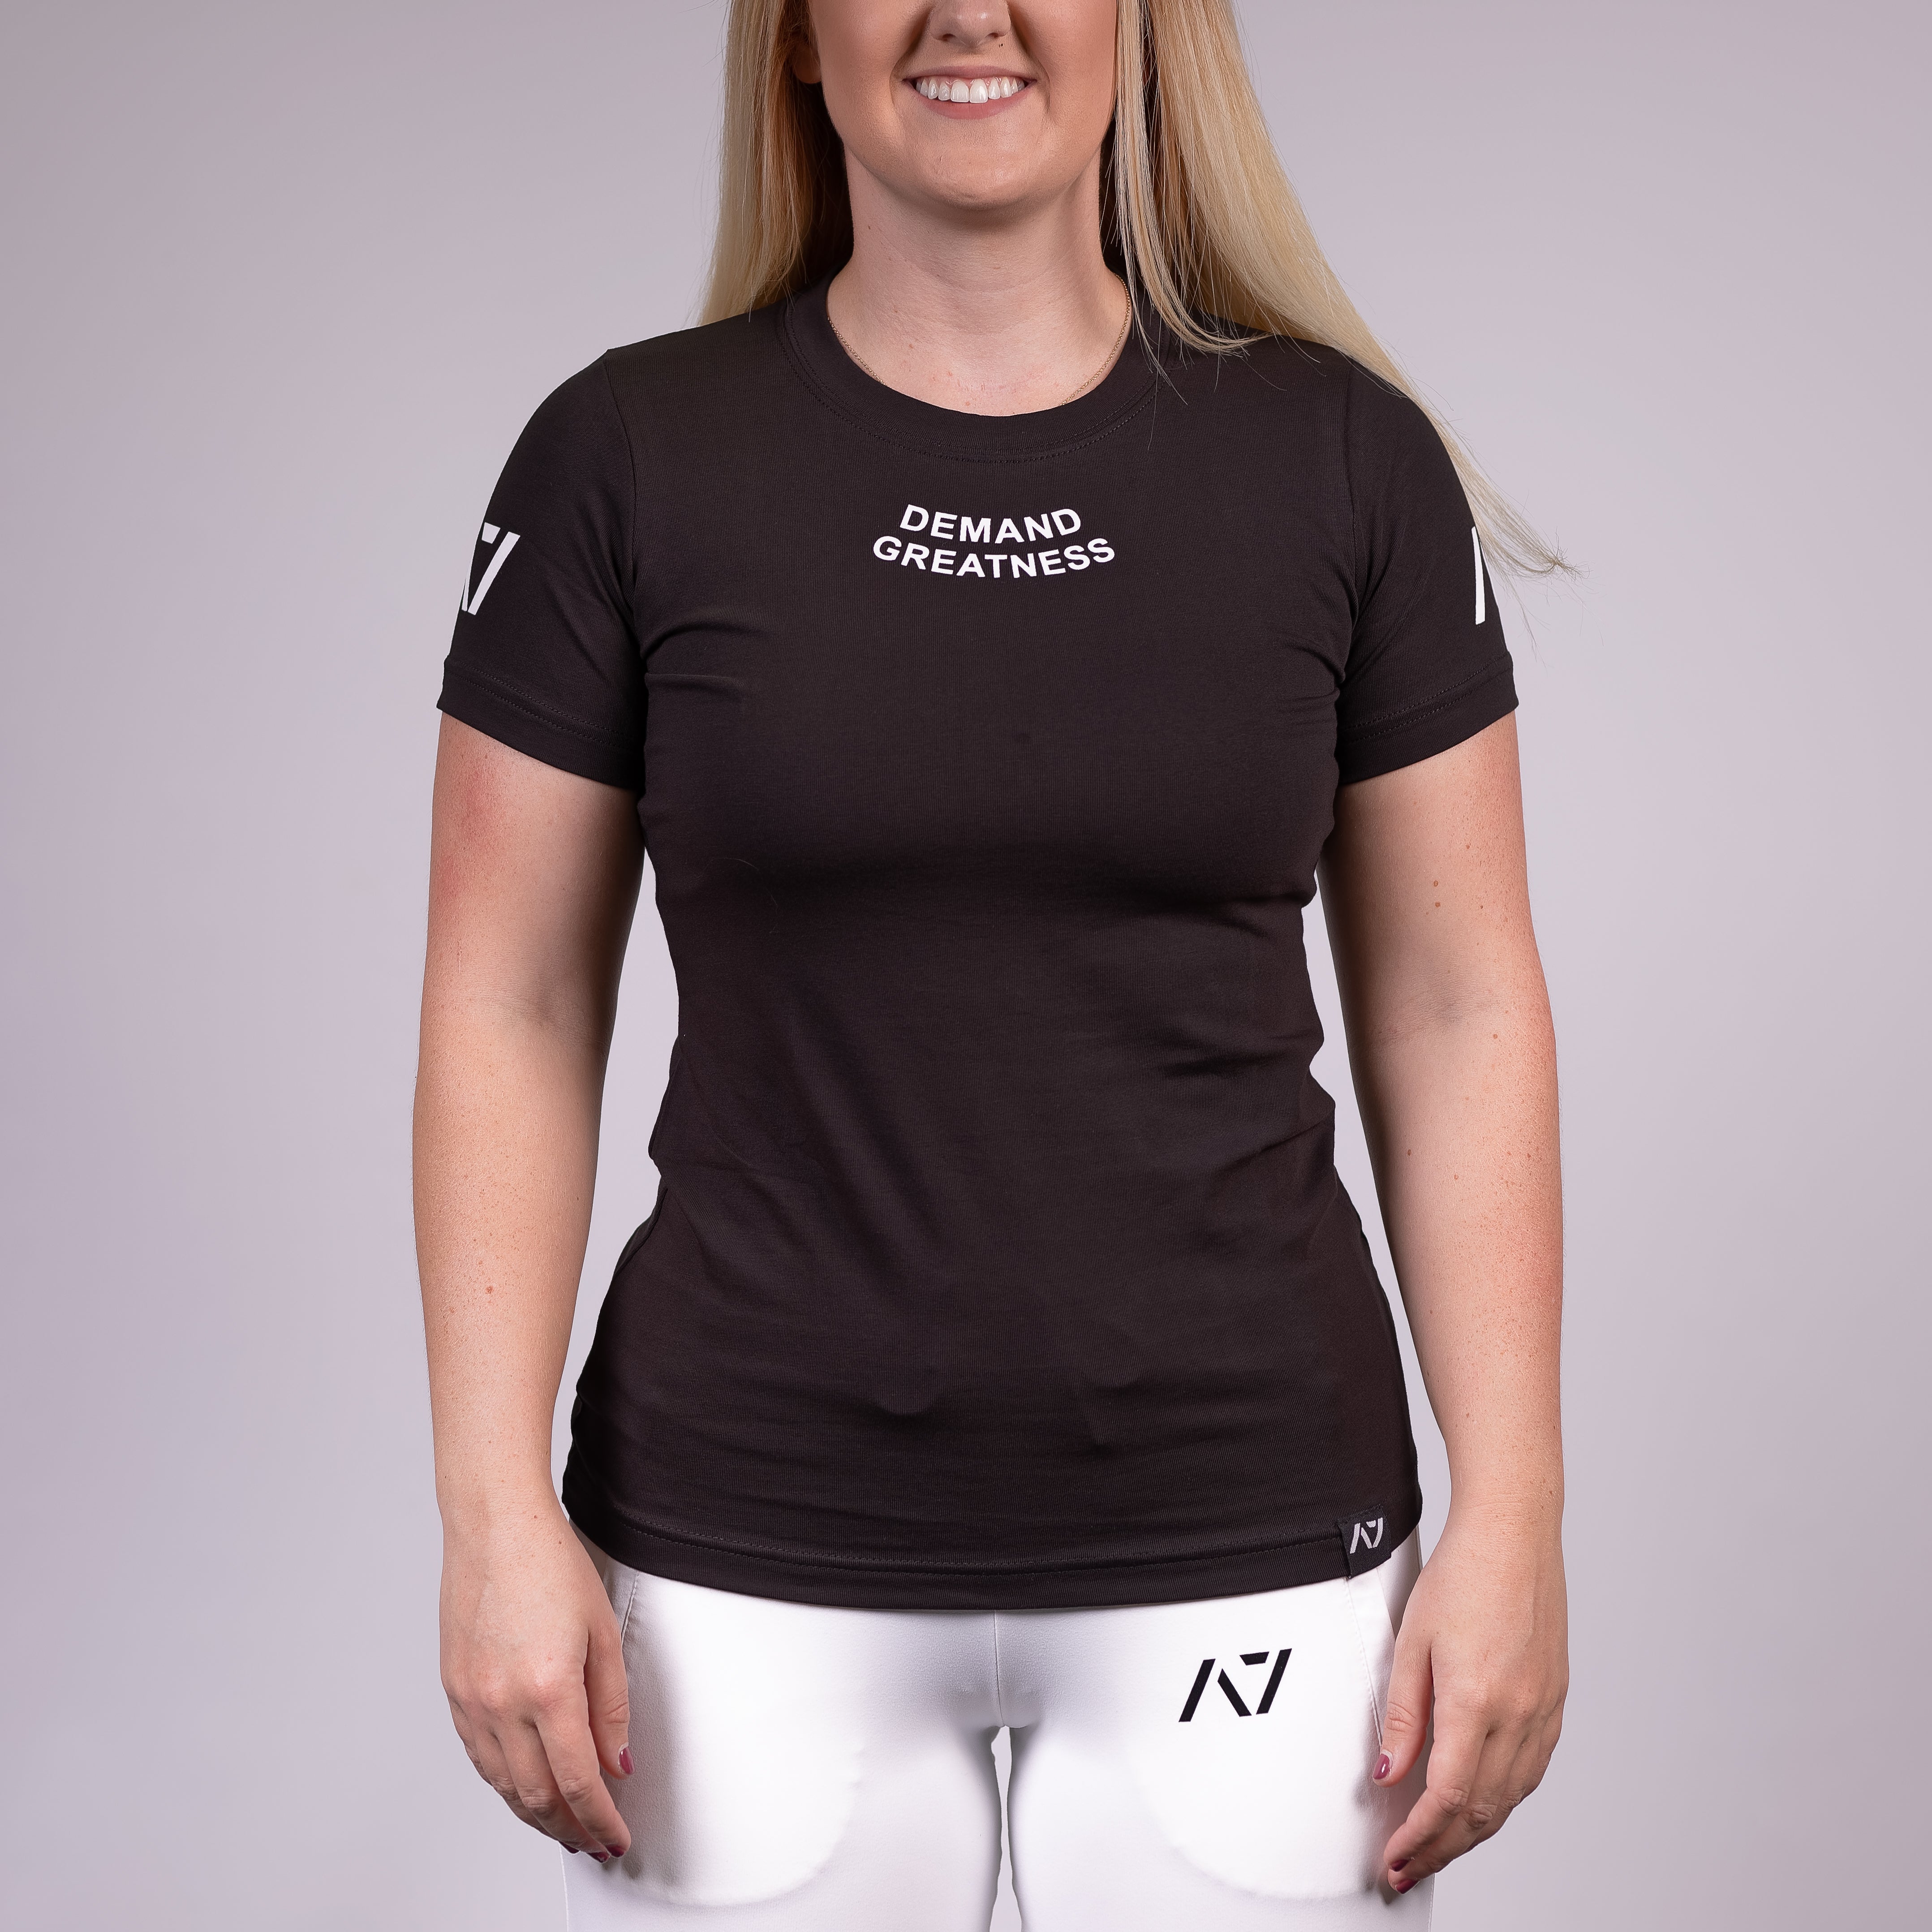 Demand Greatness IPF Approved Logo Women's Meet Shirt - Black